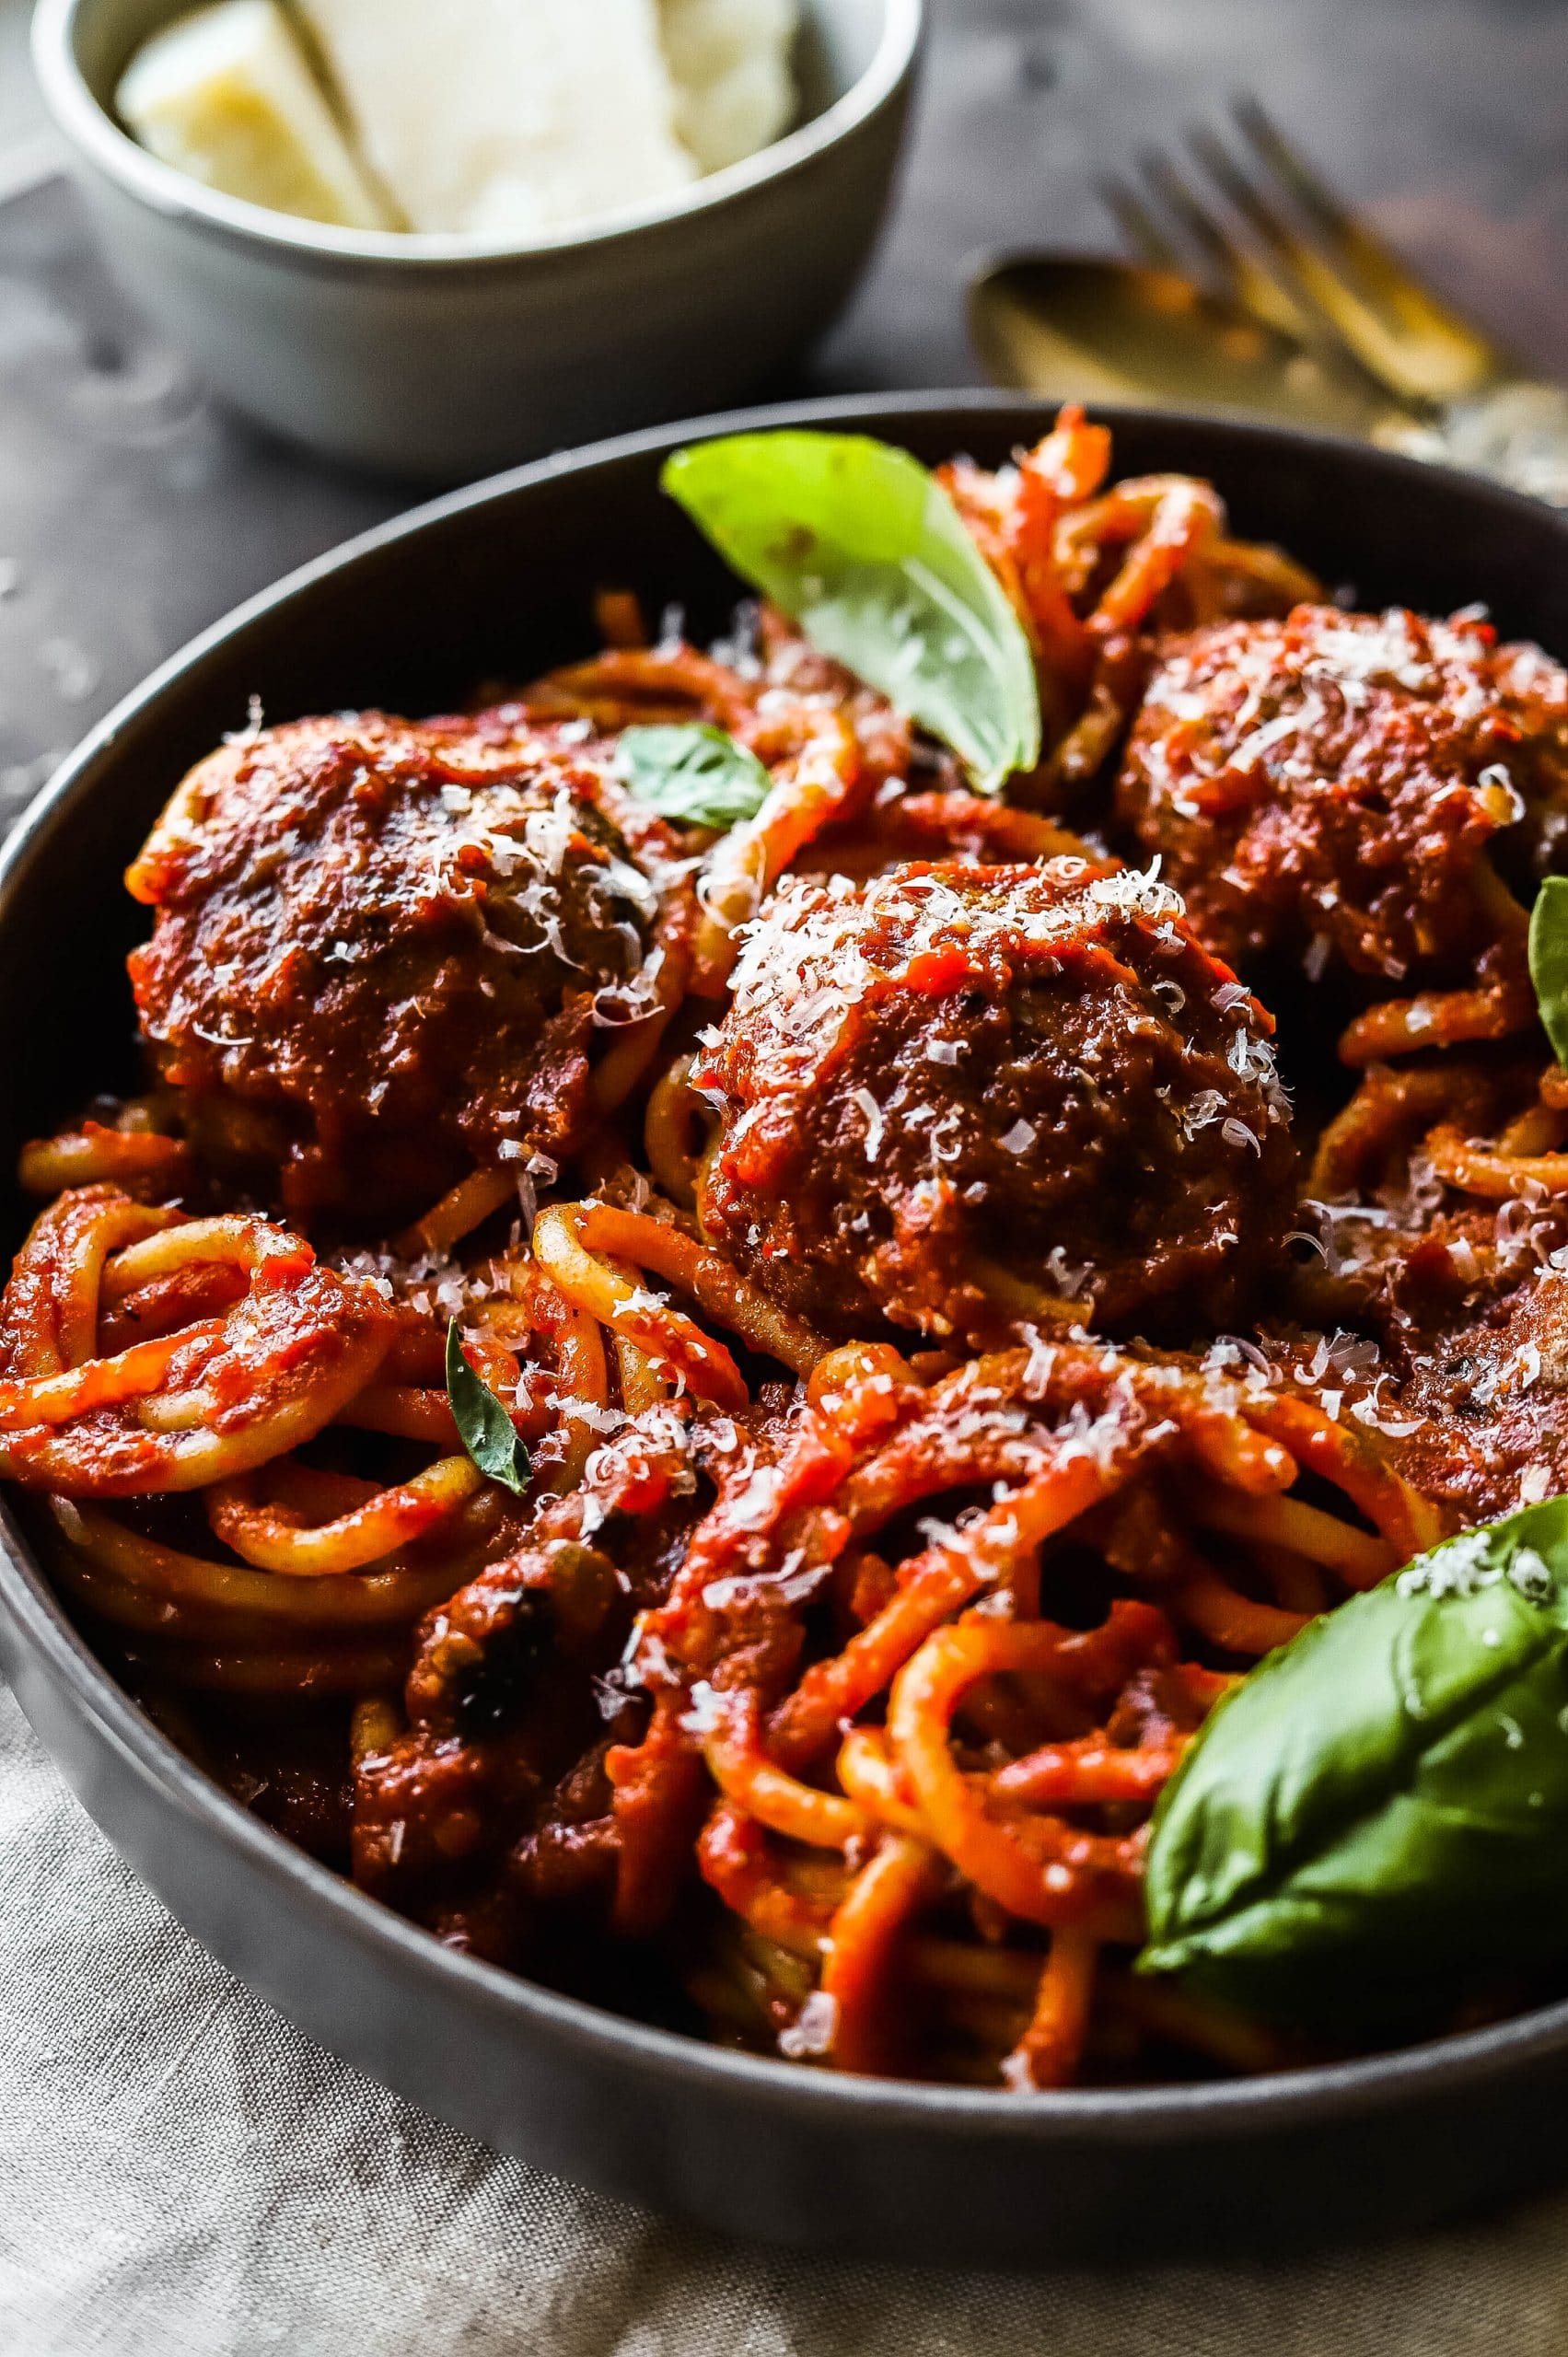 classic spaghetti and meatballs recipe